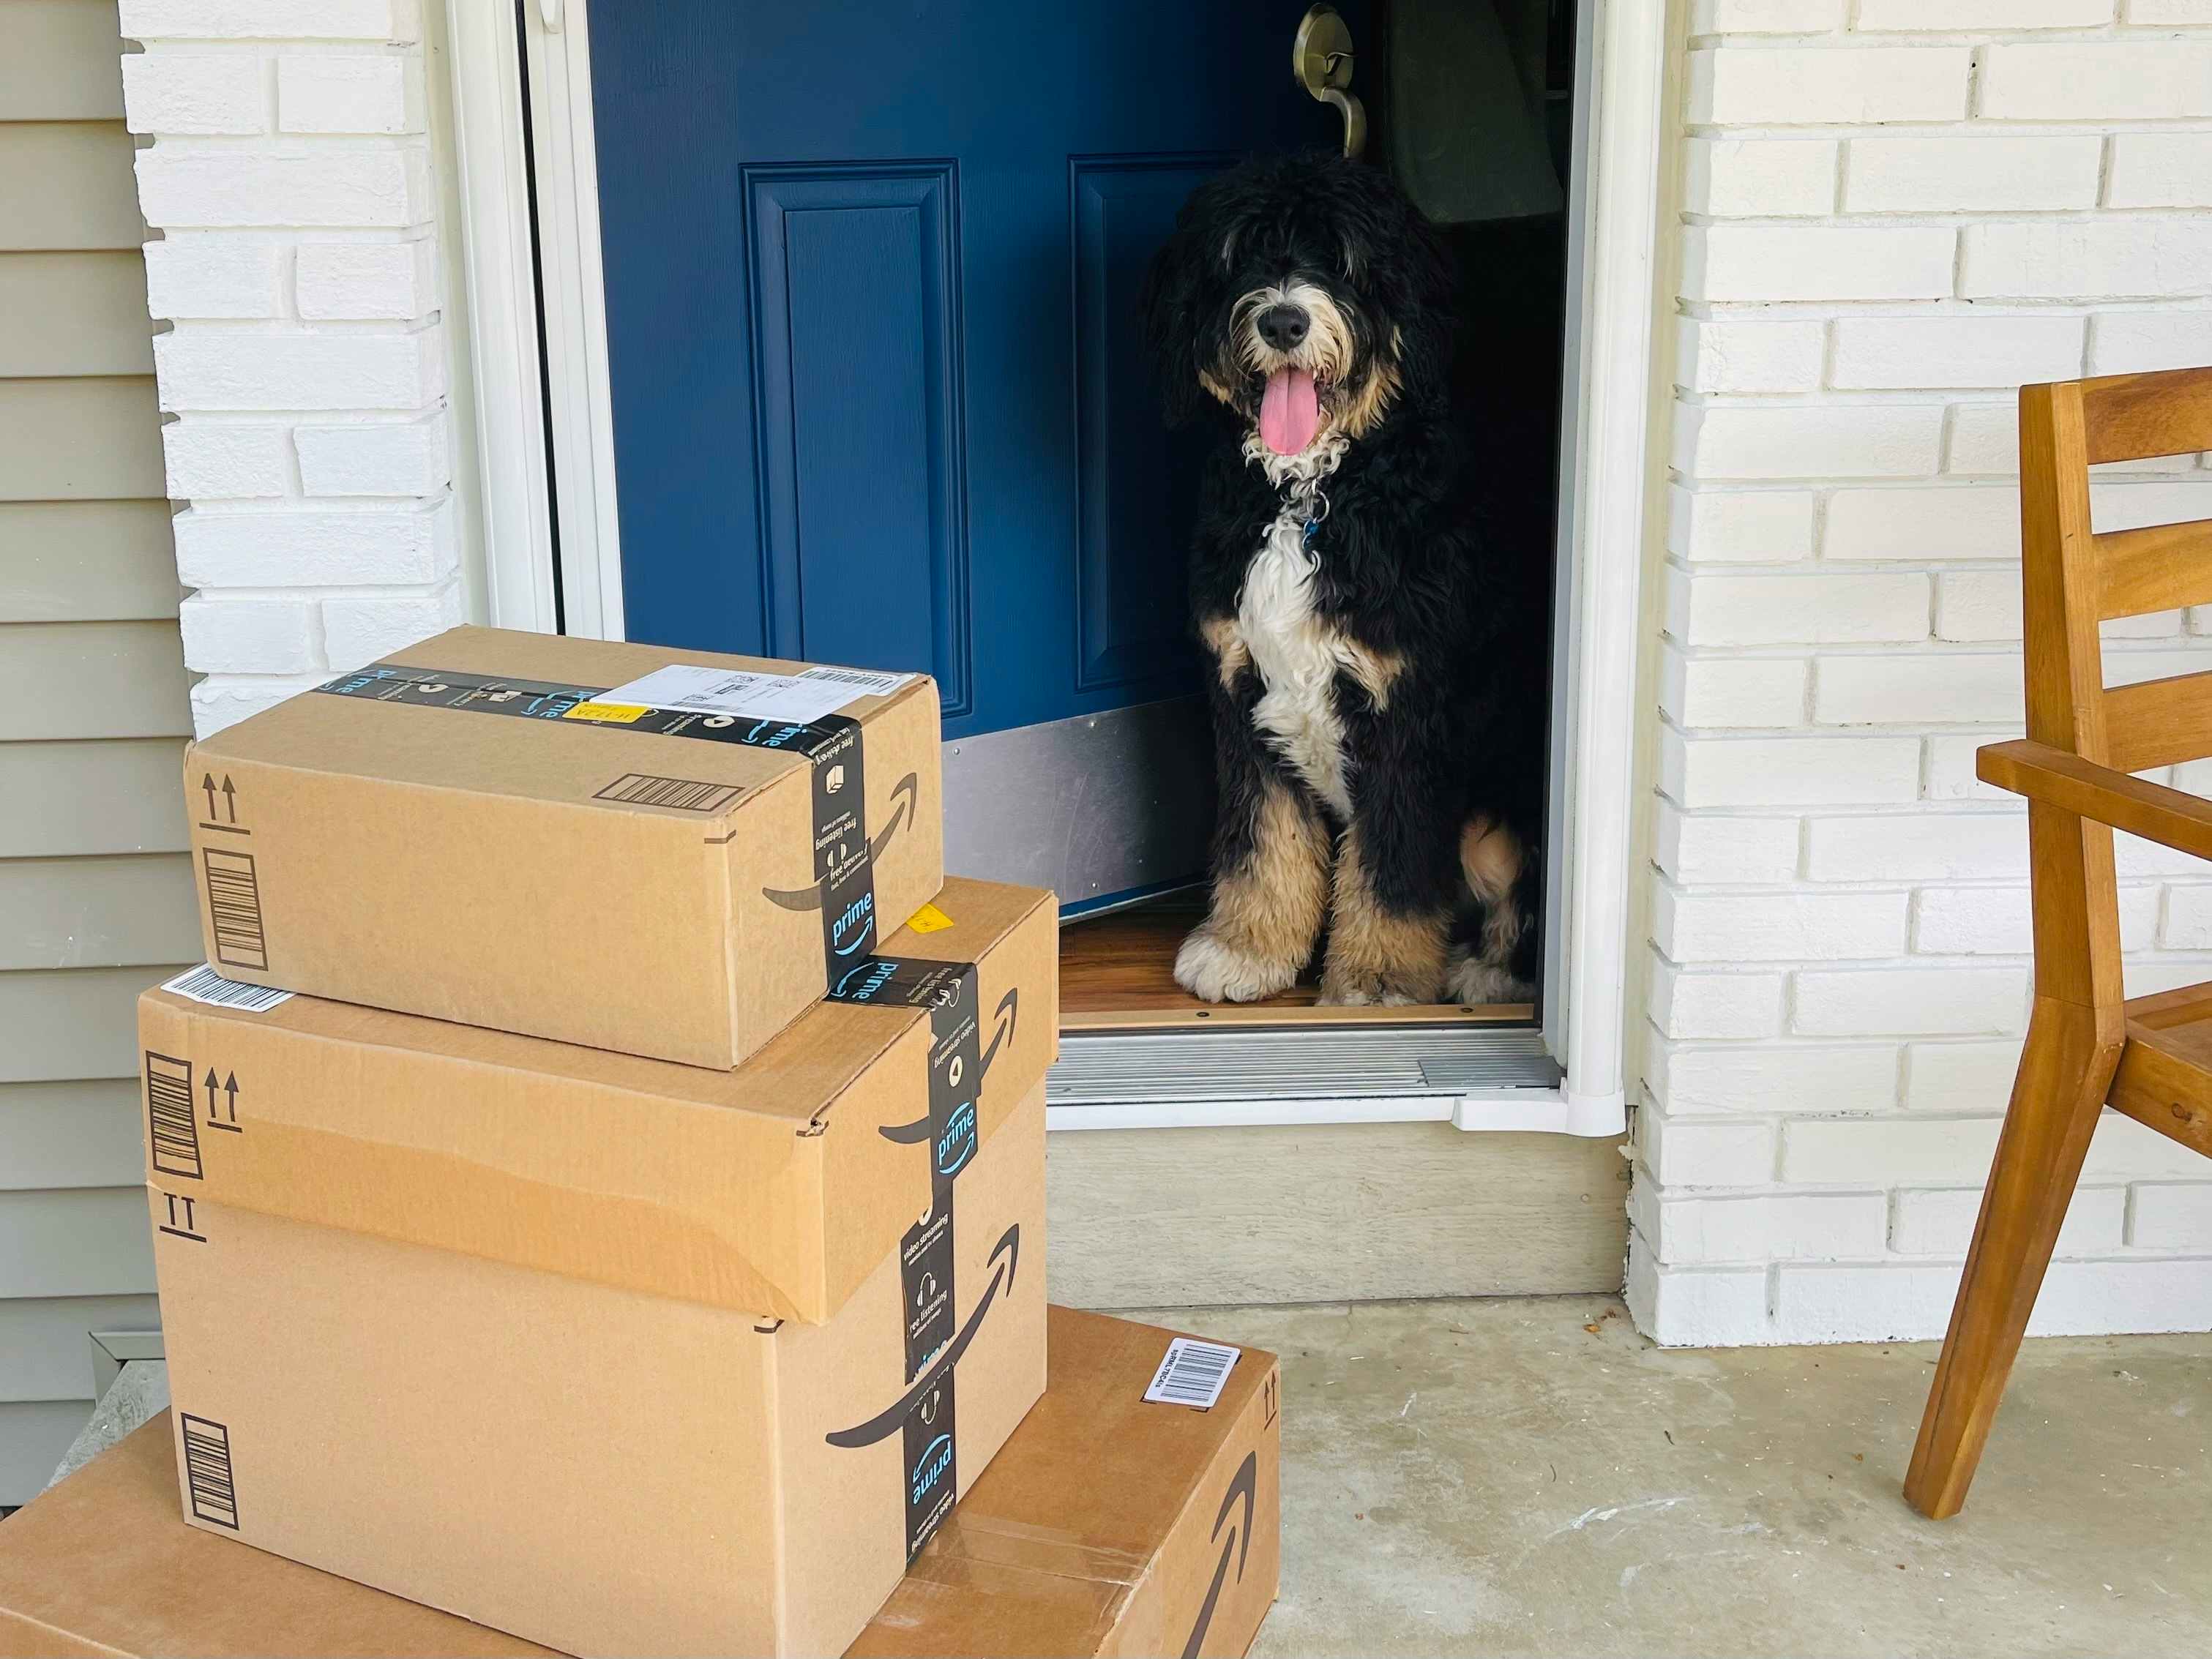 a dog in open doorway next to amazon boxes on door step